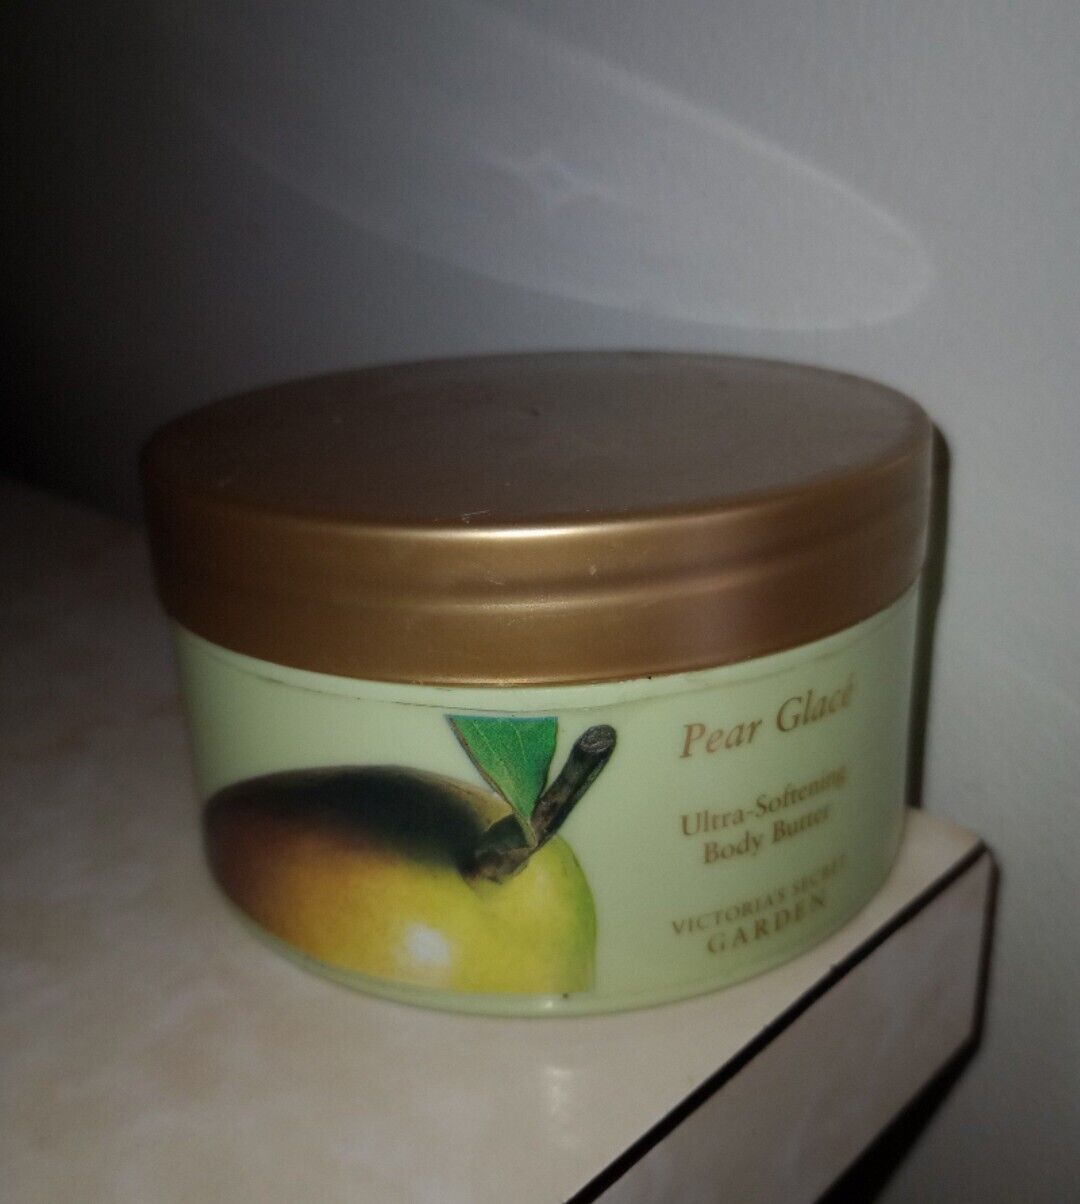 VICTORIA’S SECRET Pear Glace 6.5oz Ultra-Nourishing Body Butter Very Rare